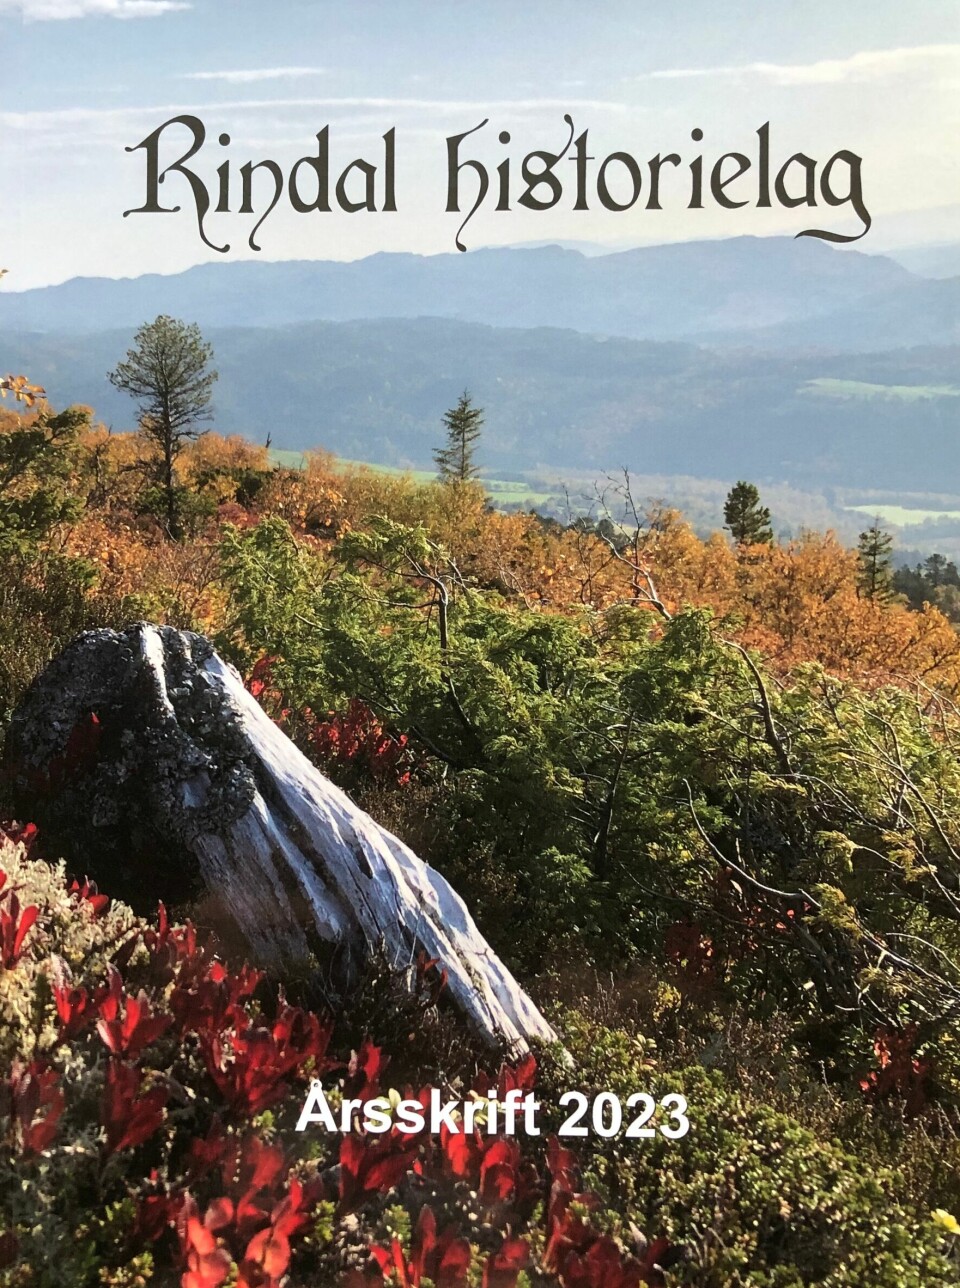 Framsida på årsskift for Rindal historielag 2023. Et høstbilde, tatt på fjellet.